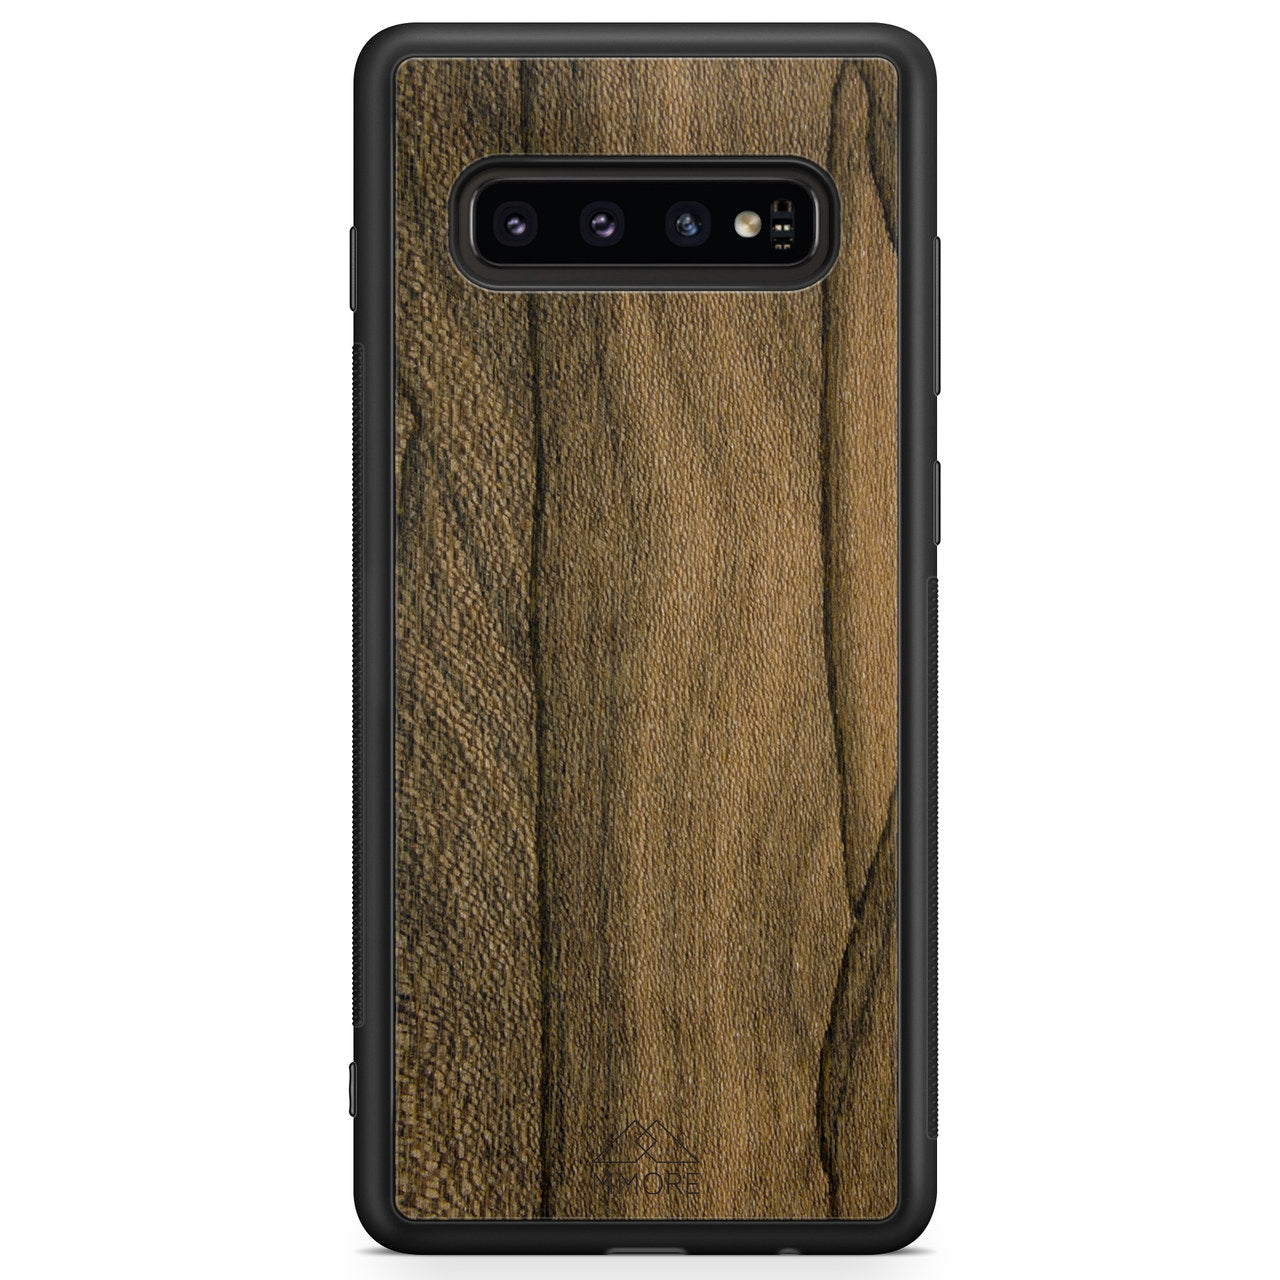 Custodia per cellulare Samsung S10 in legno Ziricote